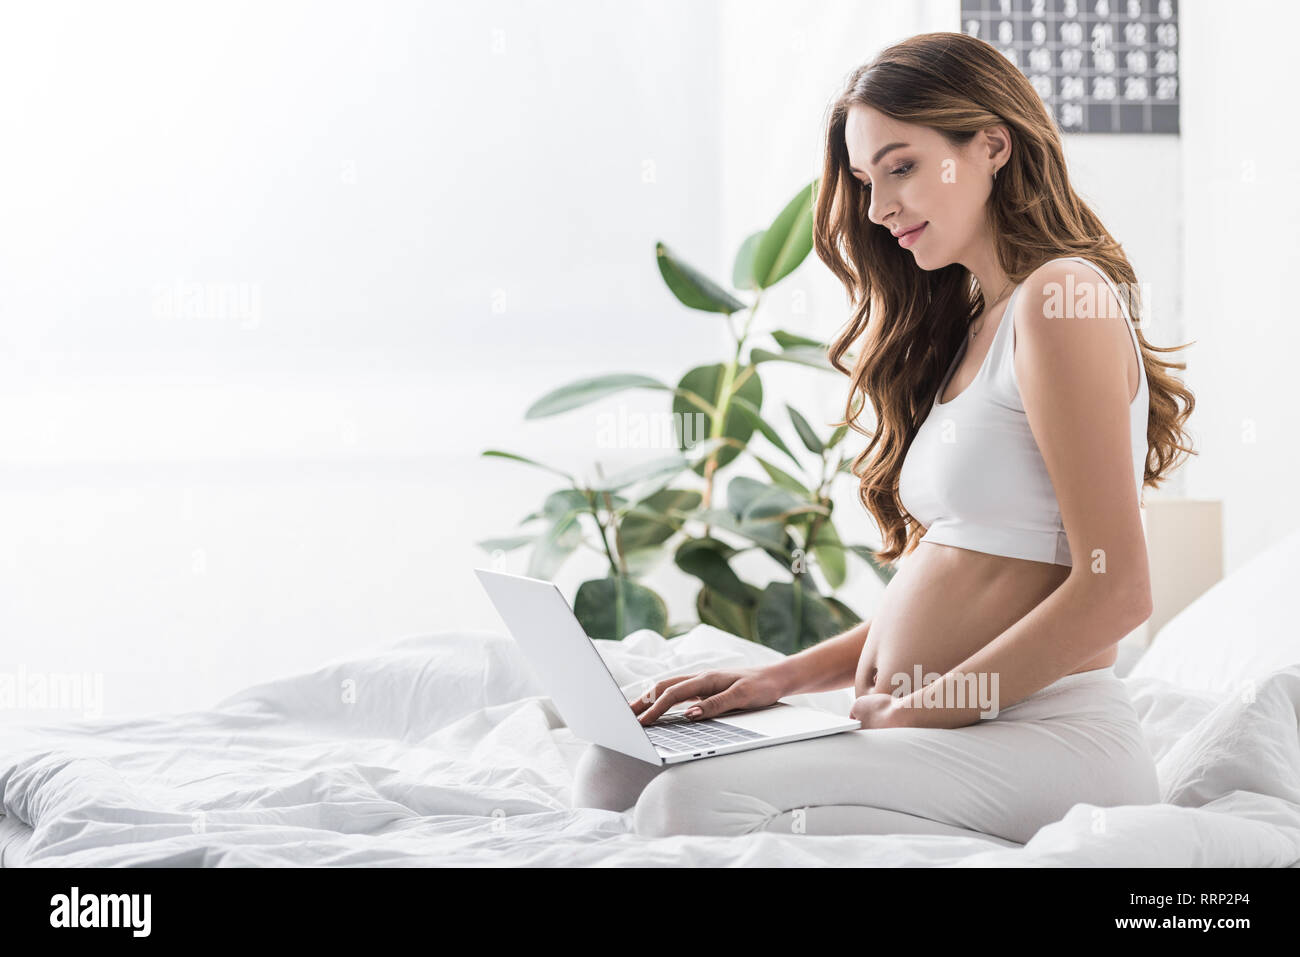 Charmante femme enceinte en utilisant laptop while sitting on bed Banque D'Images